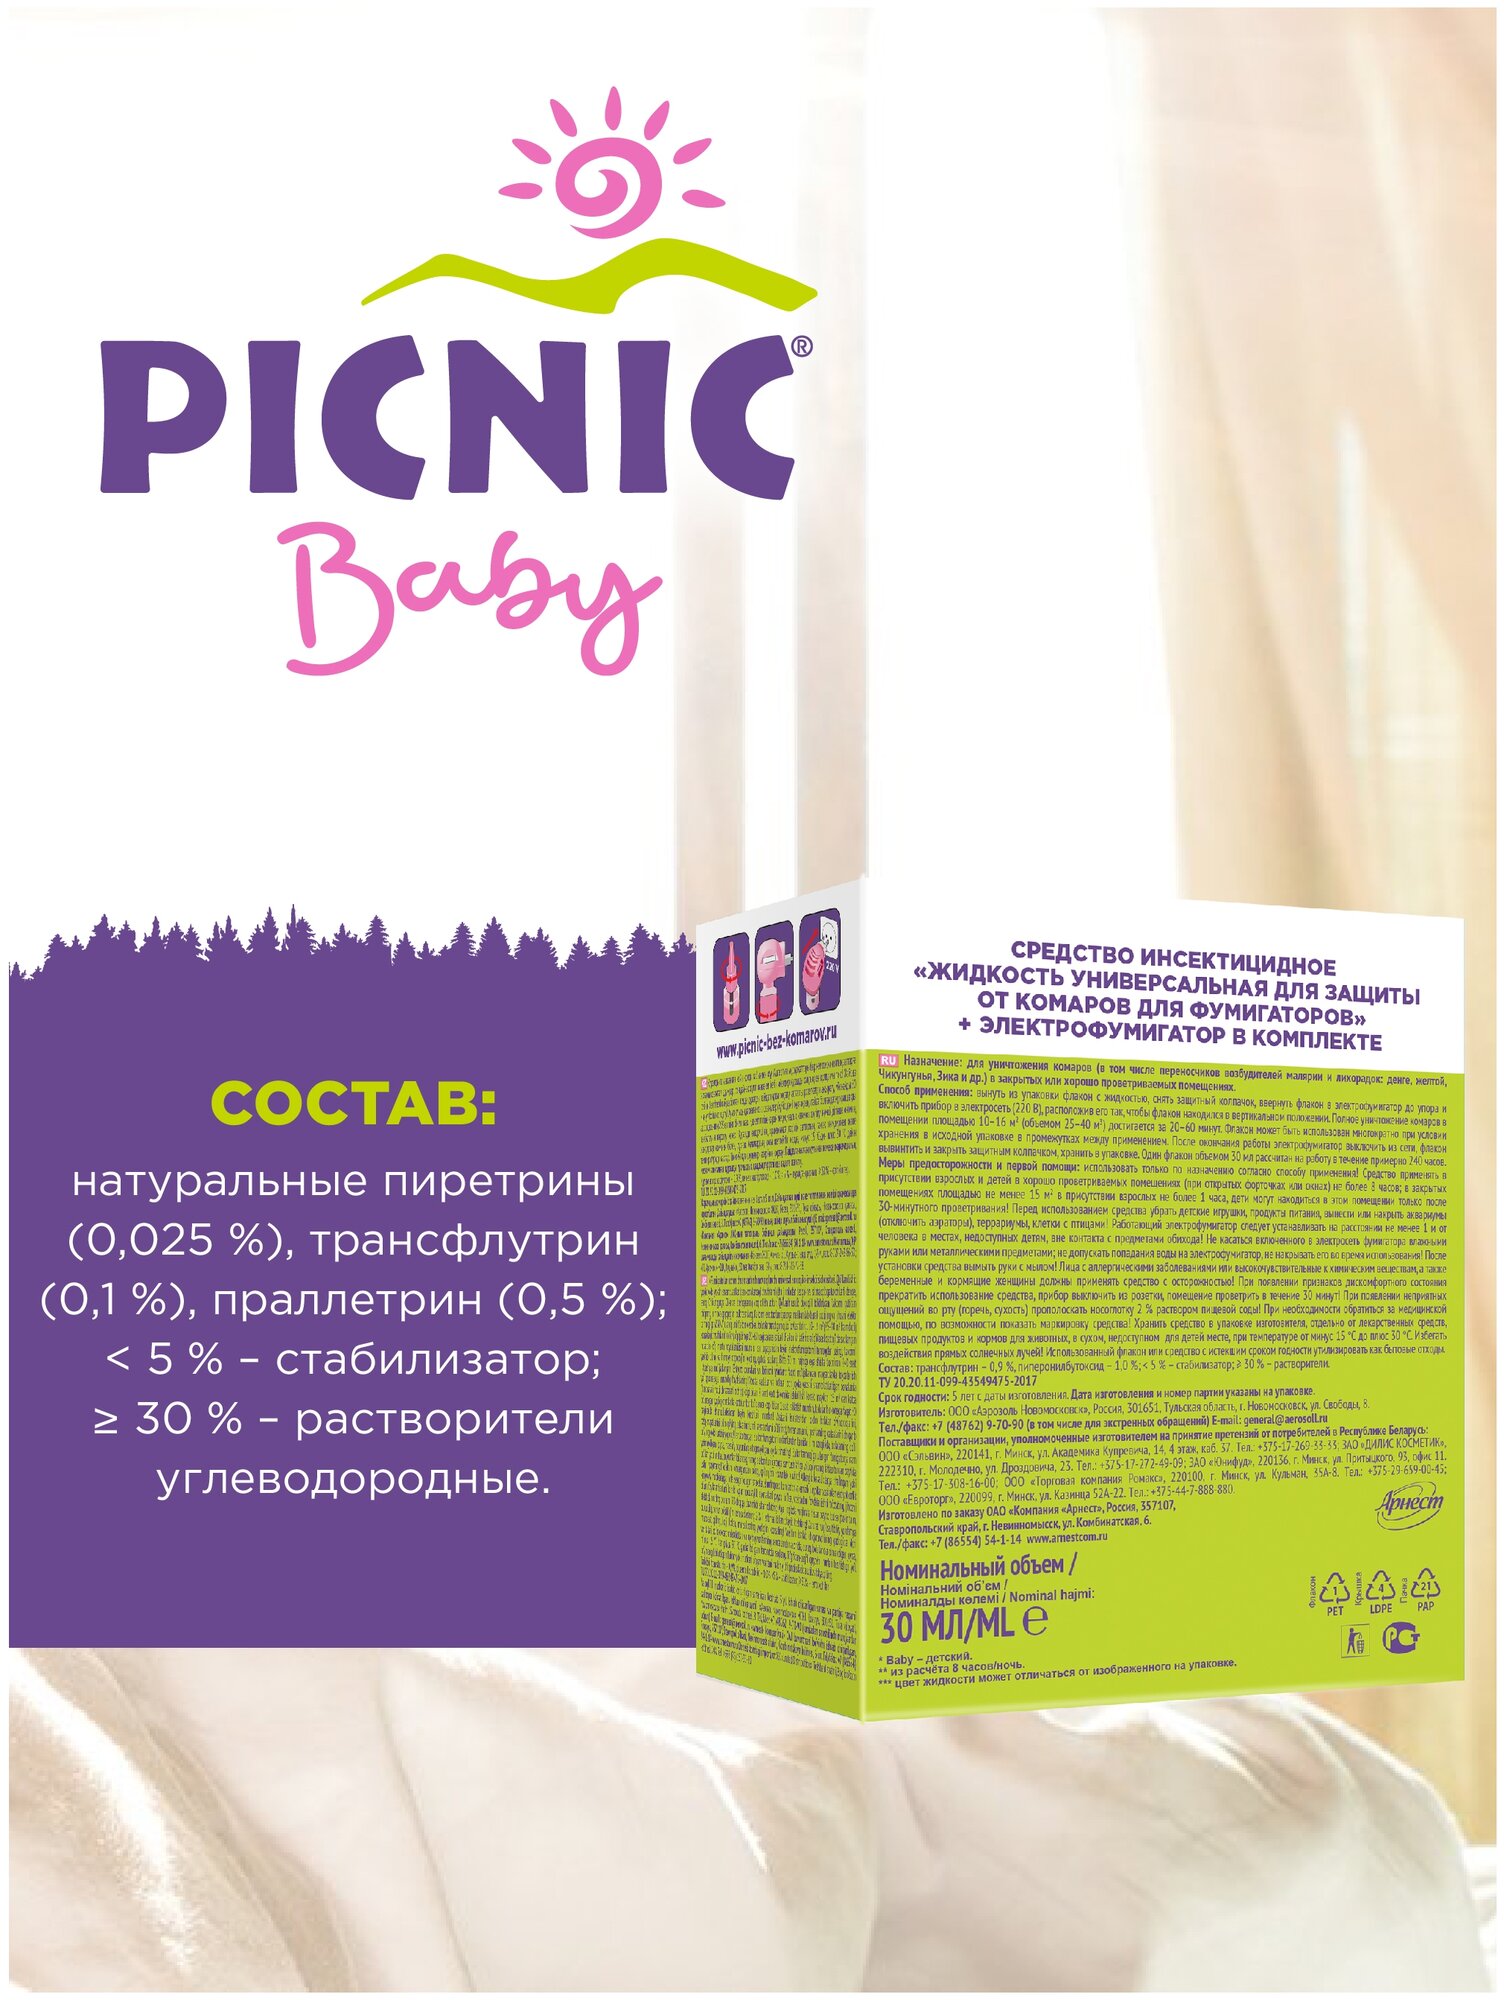 Комплект от комаров Picnic Baby (жидкость 45 ночей+электрофумигатор) Picnic - фото №4